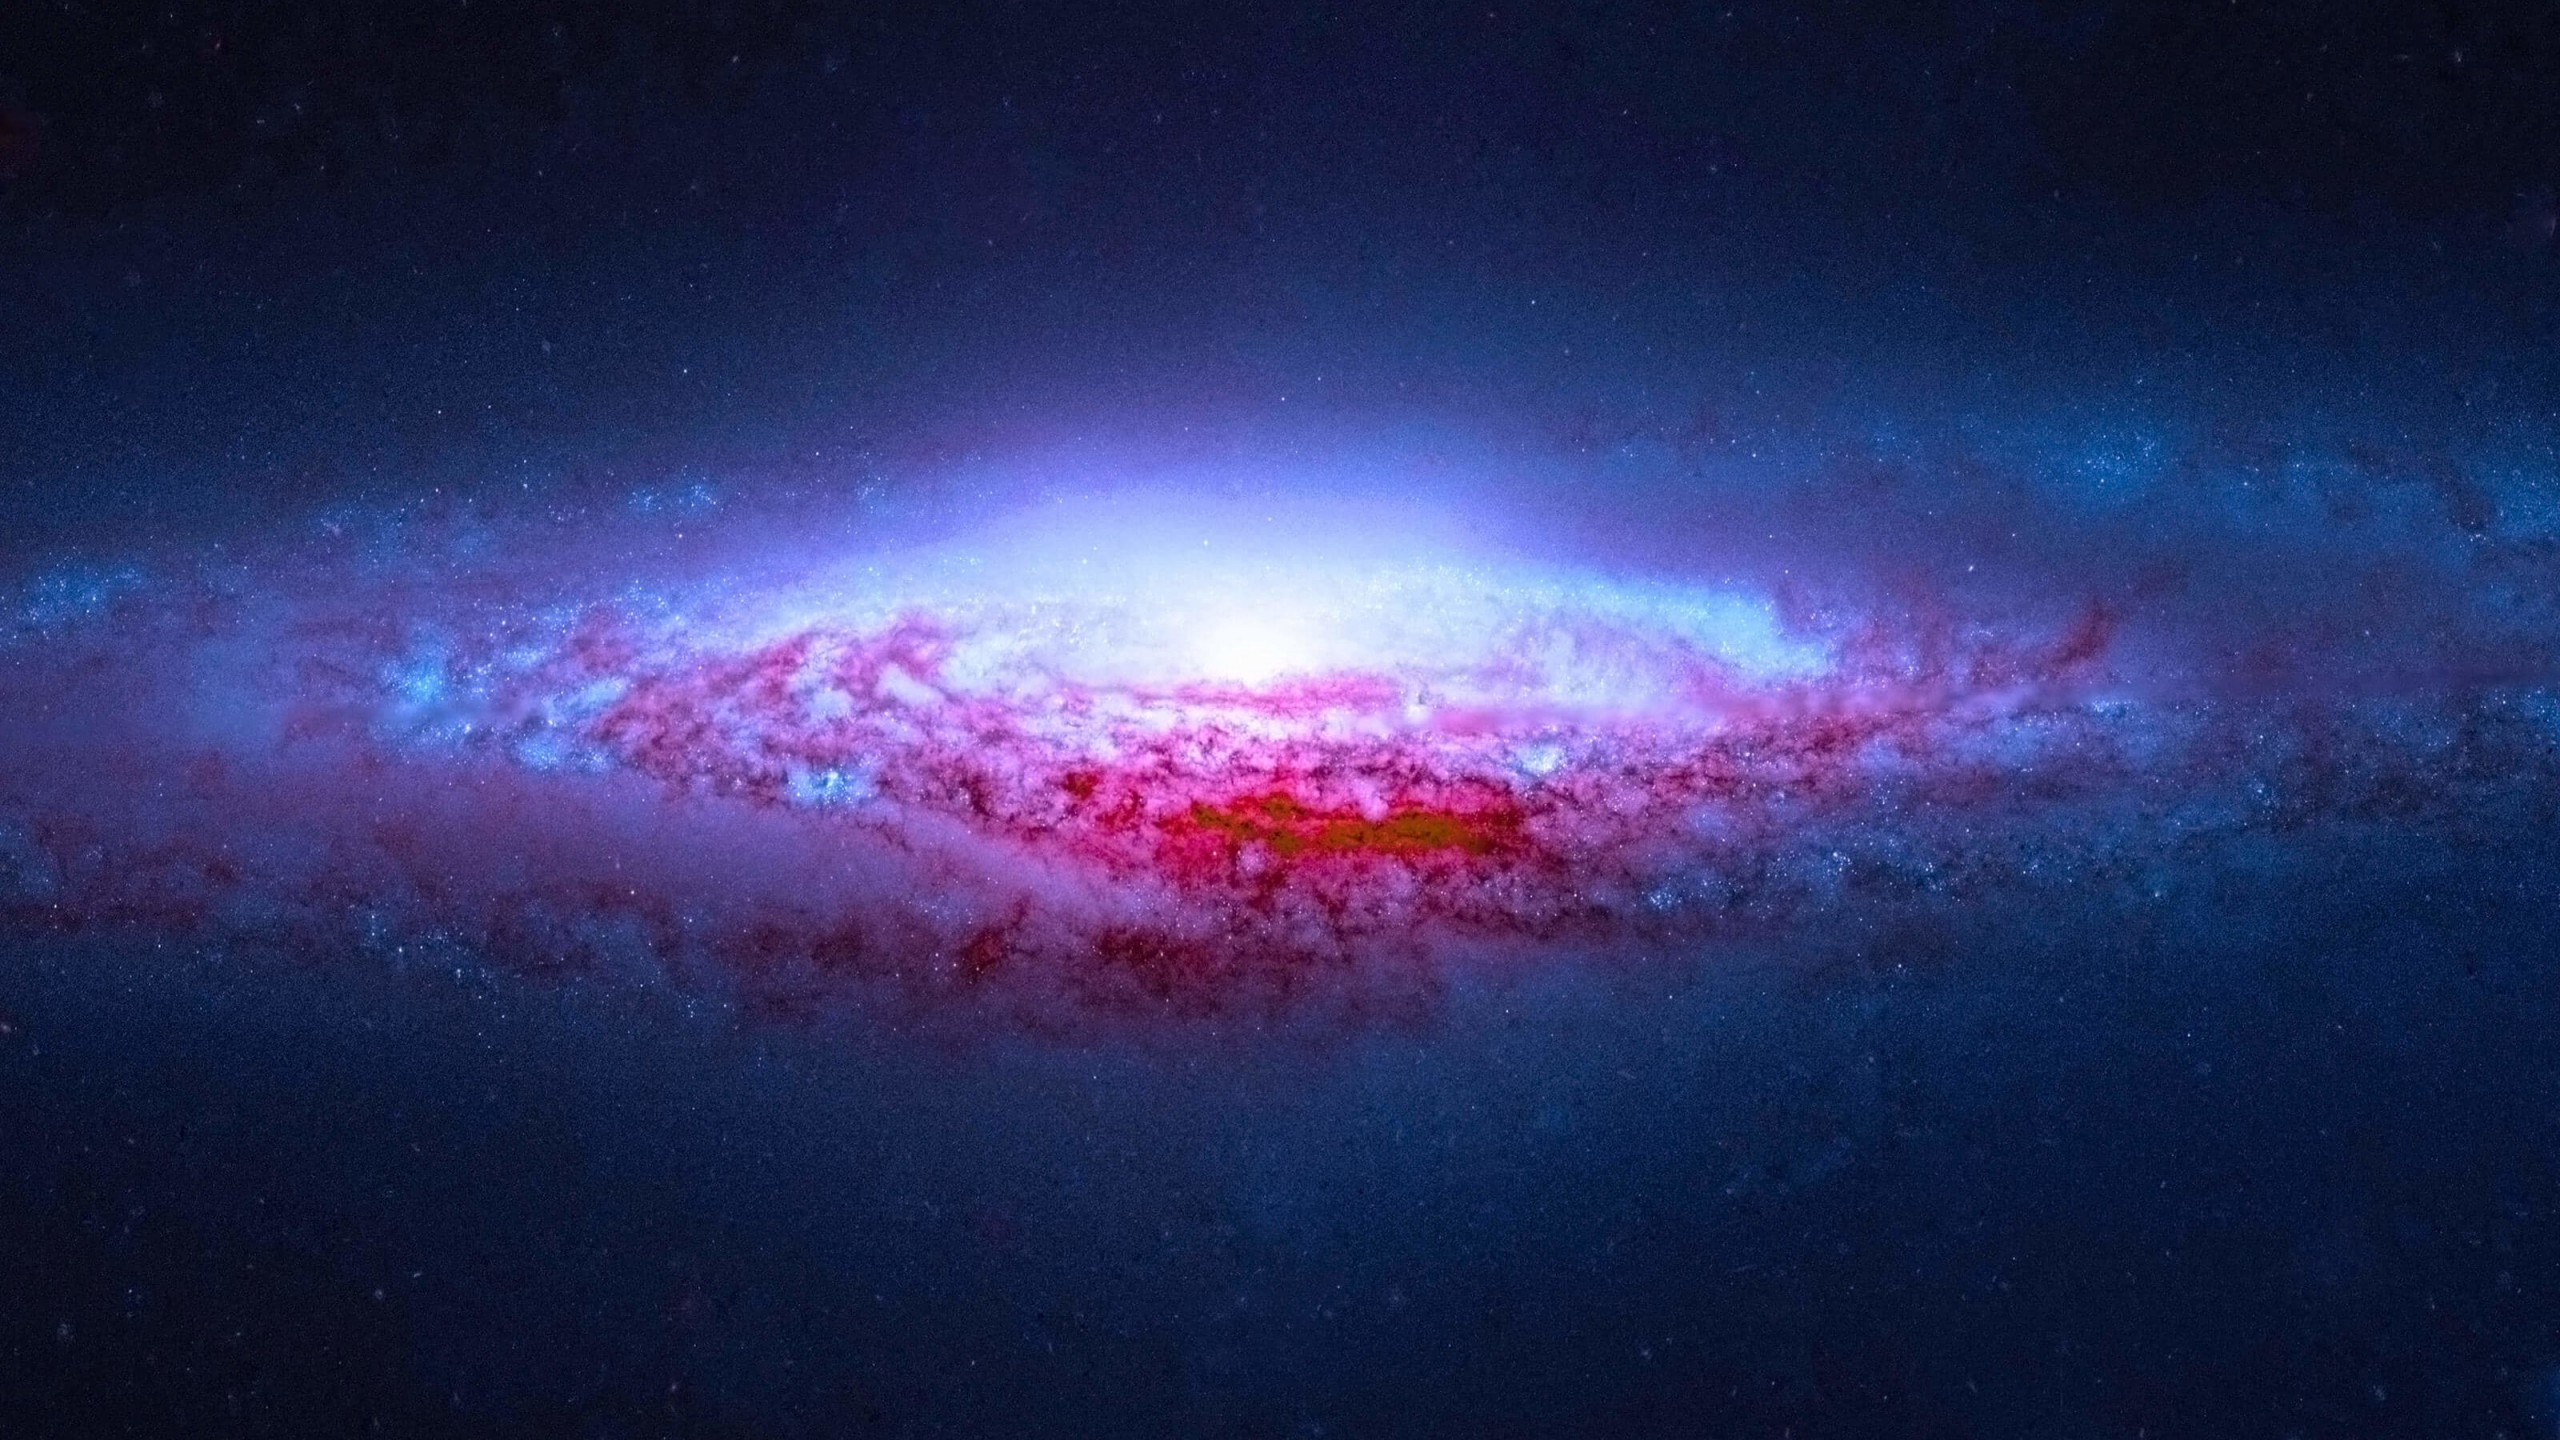 NGC 2683 Spiral Galaxy Wallpaper for Desktop 2560x1440